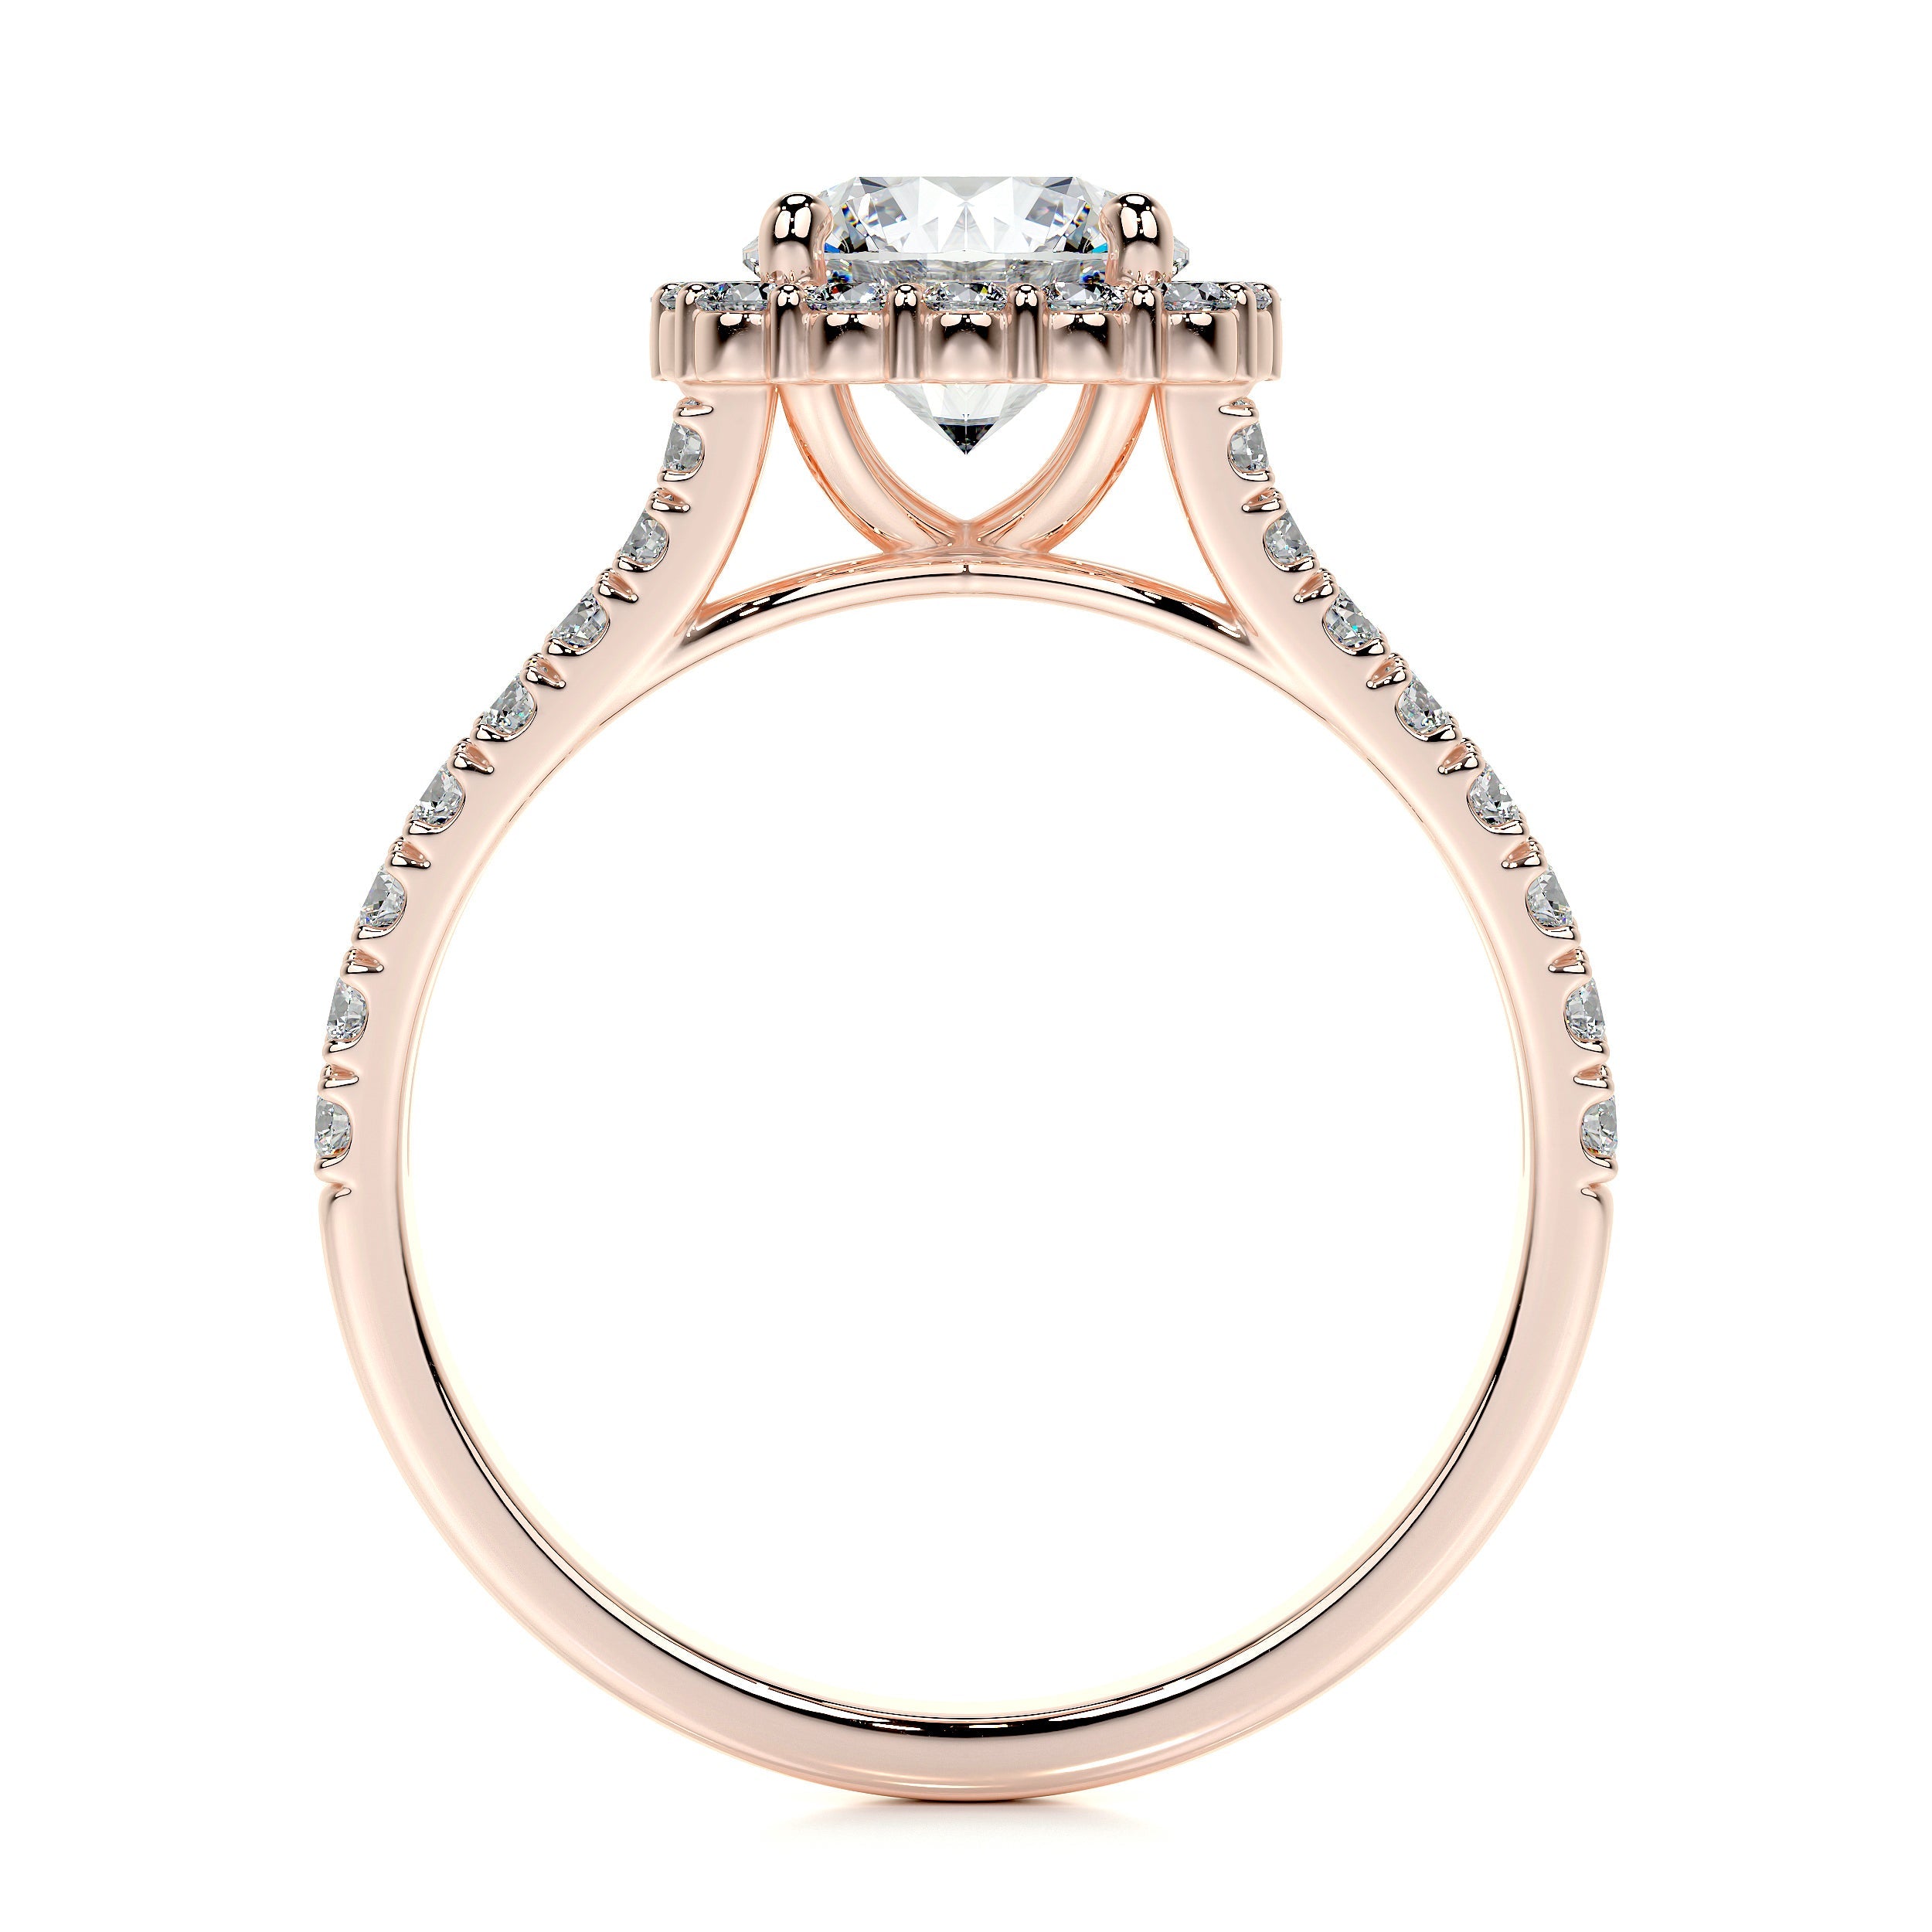 Hilary Lab Grown Diamond Ring   (3 Carat) -14K Rose Gold